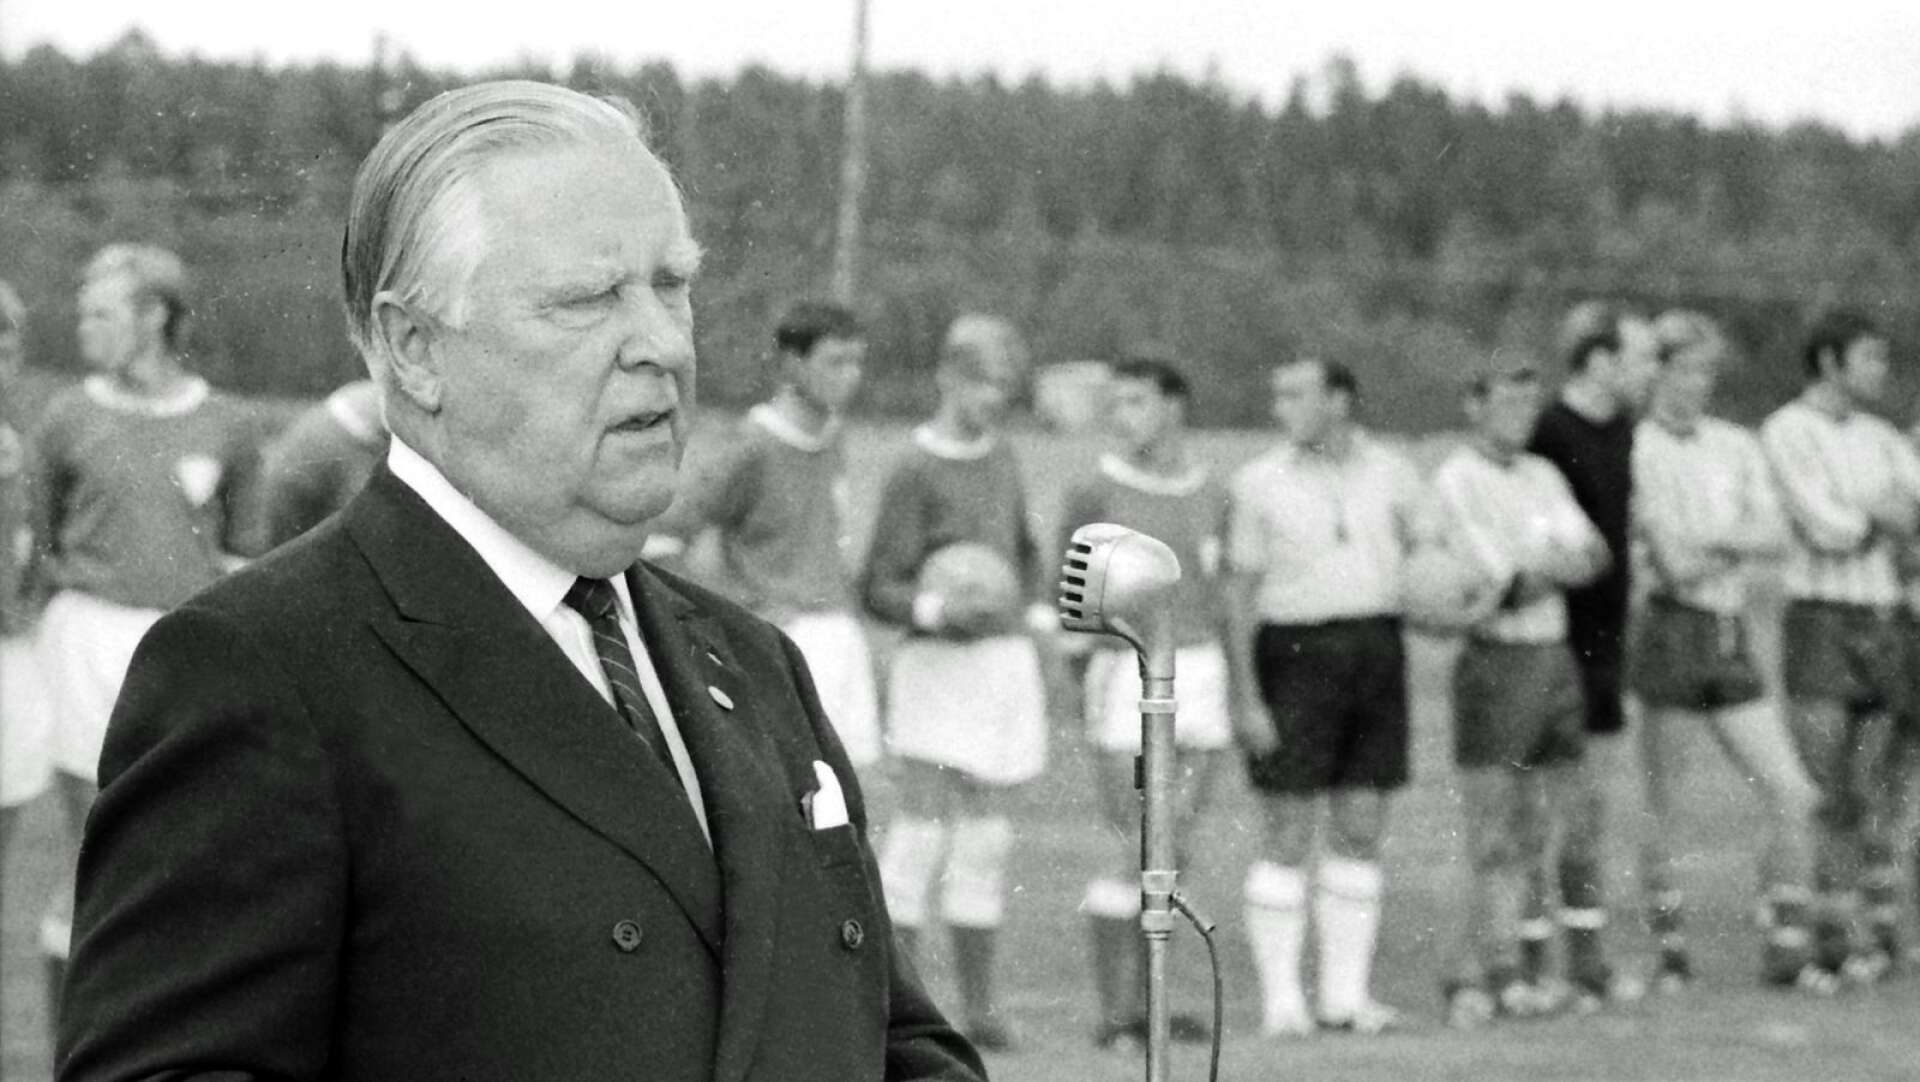 En ny idrottsplats invigdes. Det var Brovallen i Värmlandsbro som fick sin invigning. Harry Jansson var inte bara kommunalpolitiker, han var också ordförande i Värmlands Fotbollförbund och höll invigningstalet. Invigningsmatchen spelades mellan Värmlandsbro SK och SK Sifhälla. 